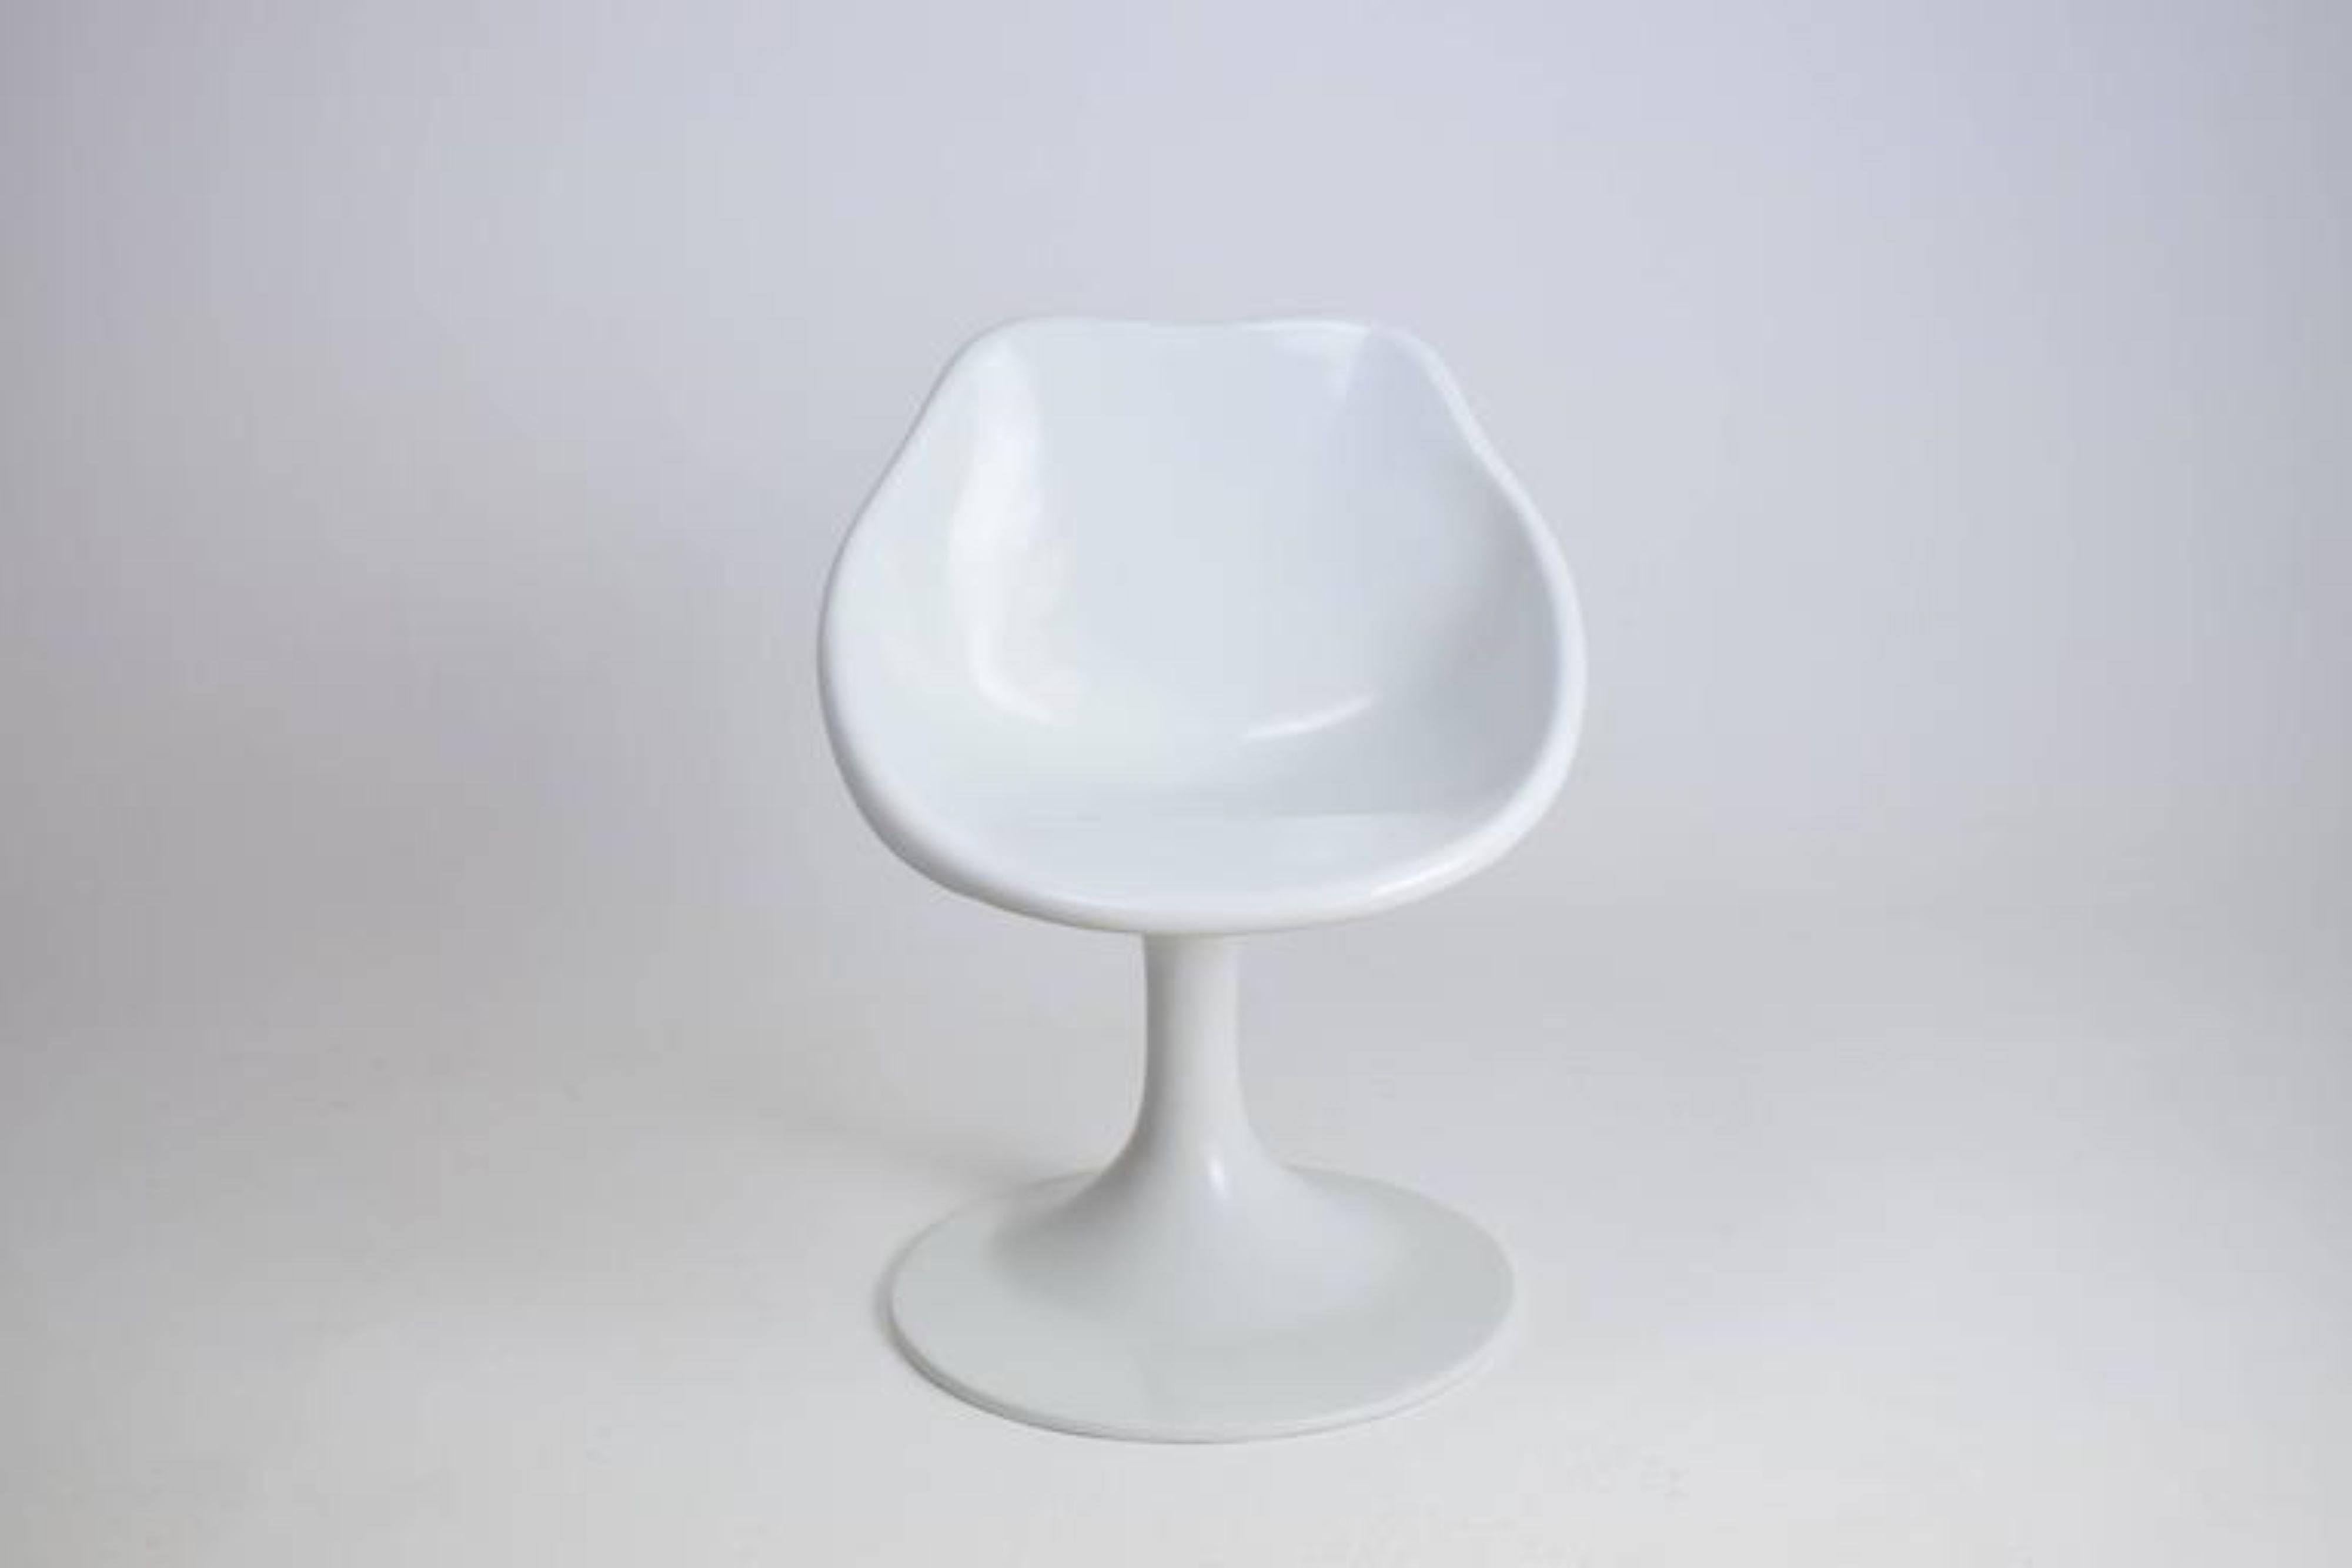 Chaise vintage du 20e siècle en fibre de verre blanche au design de l'ère spatiale avec des courbes futuristes.
Dans le style de la chaise Orbit de Walter Grunder et Markus Farner.

Belle condition vintage.

-------

Nous sommes un espace